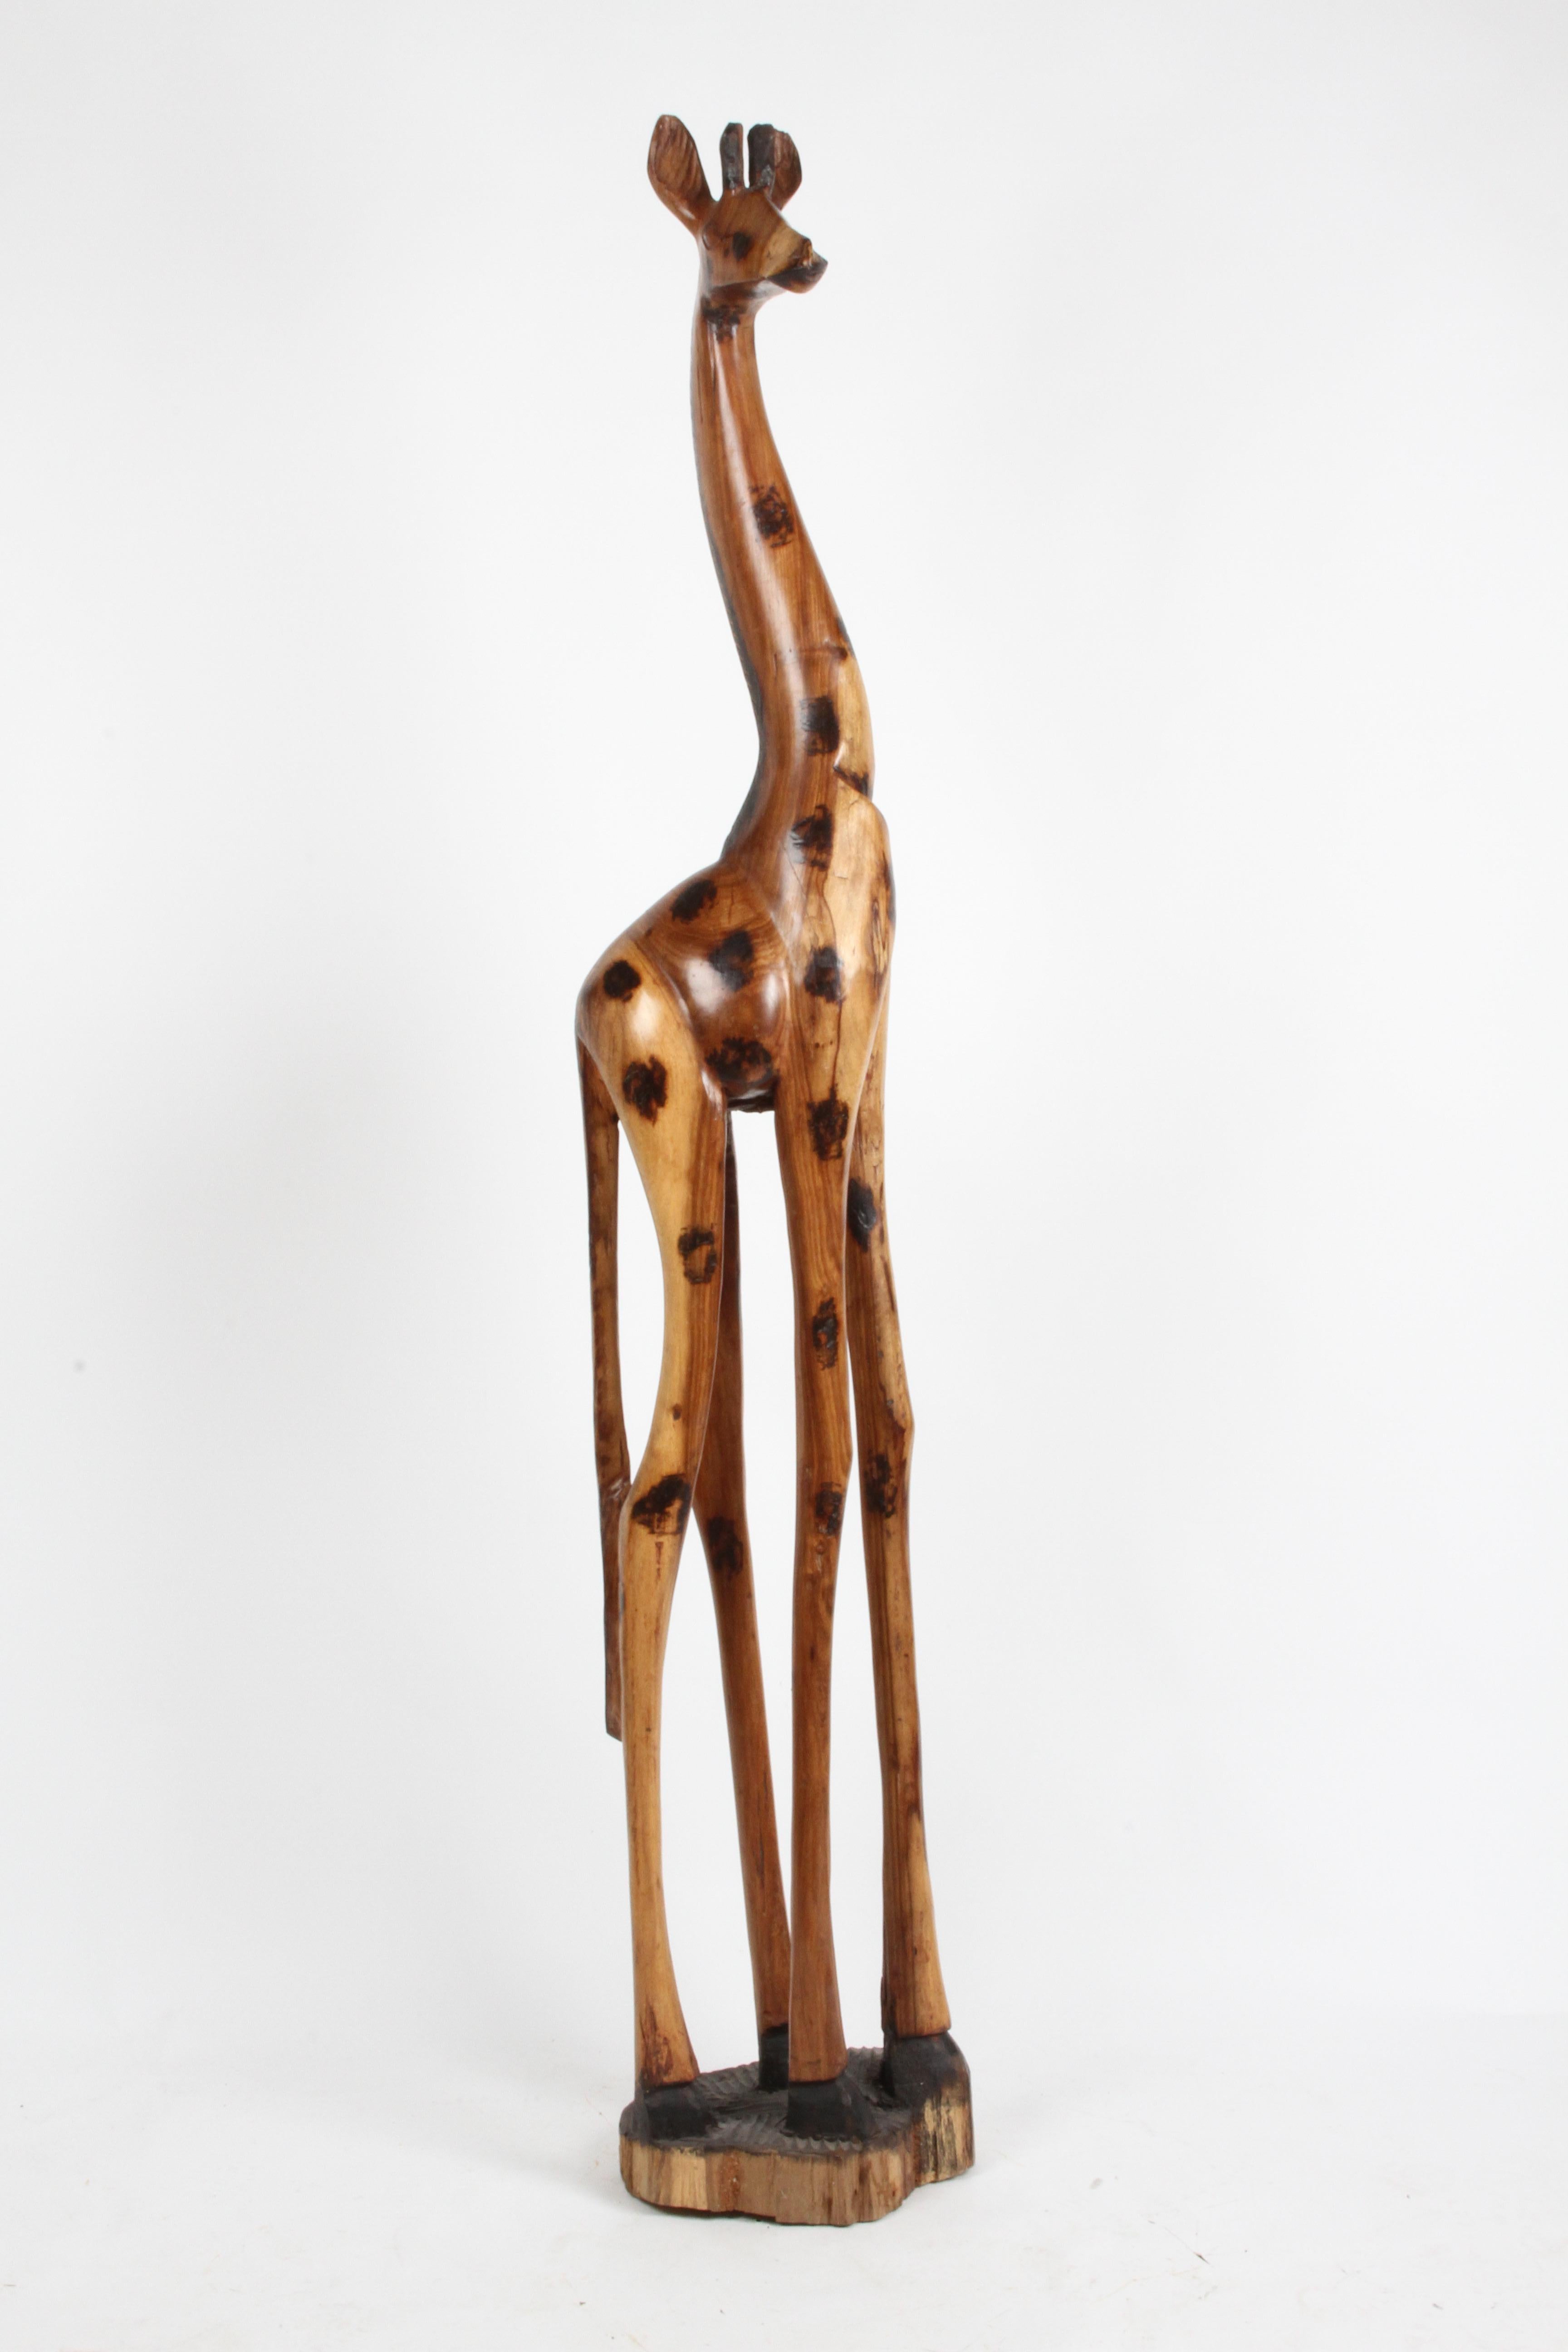 Girafe en bois sculptée à la main, de grande taille, avec des taches noires carbonisées. Semble avoir été taillé dans un tronc d'arbre. En bon état vintage. Non signée. Mesures : 80